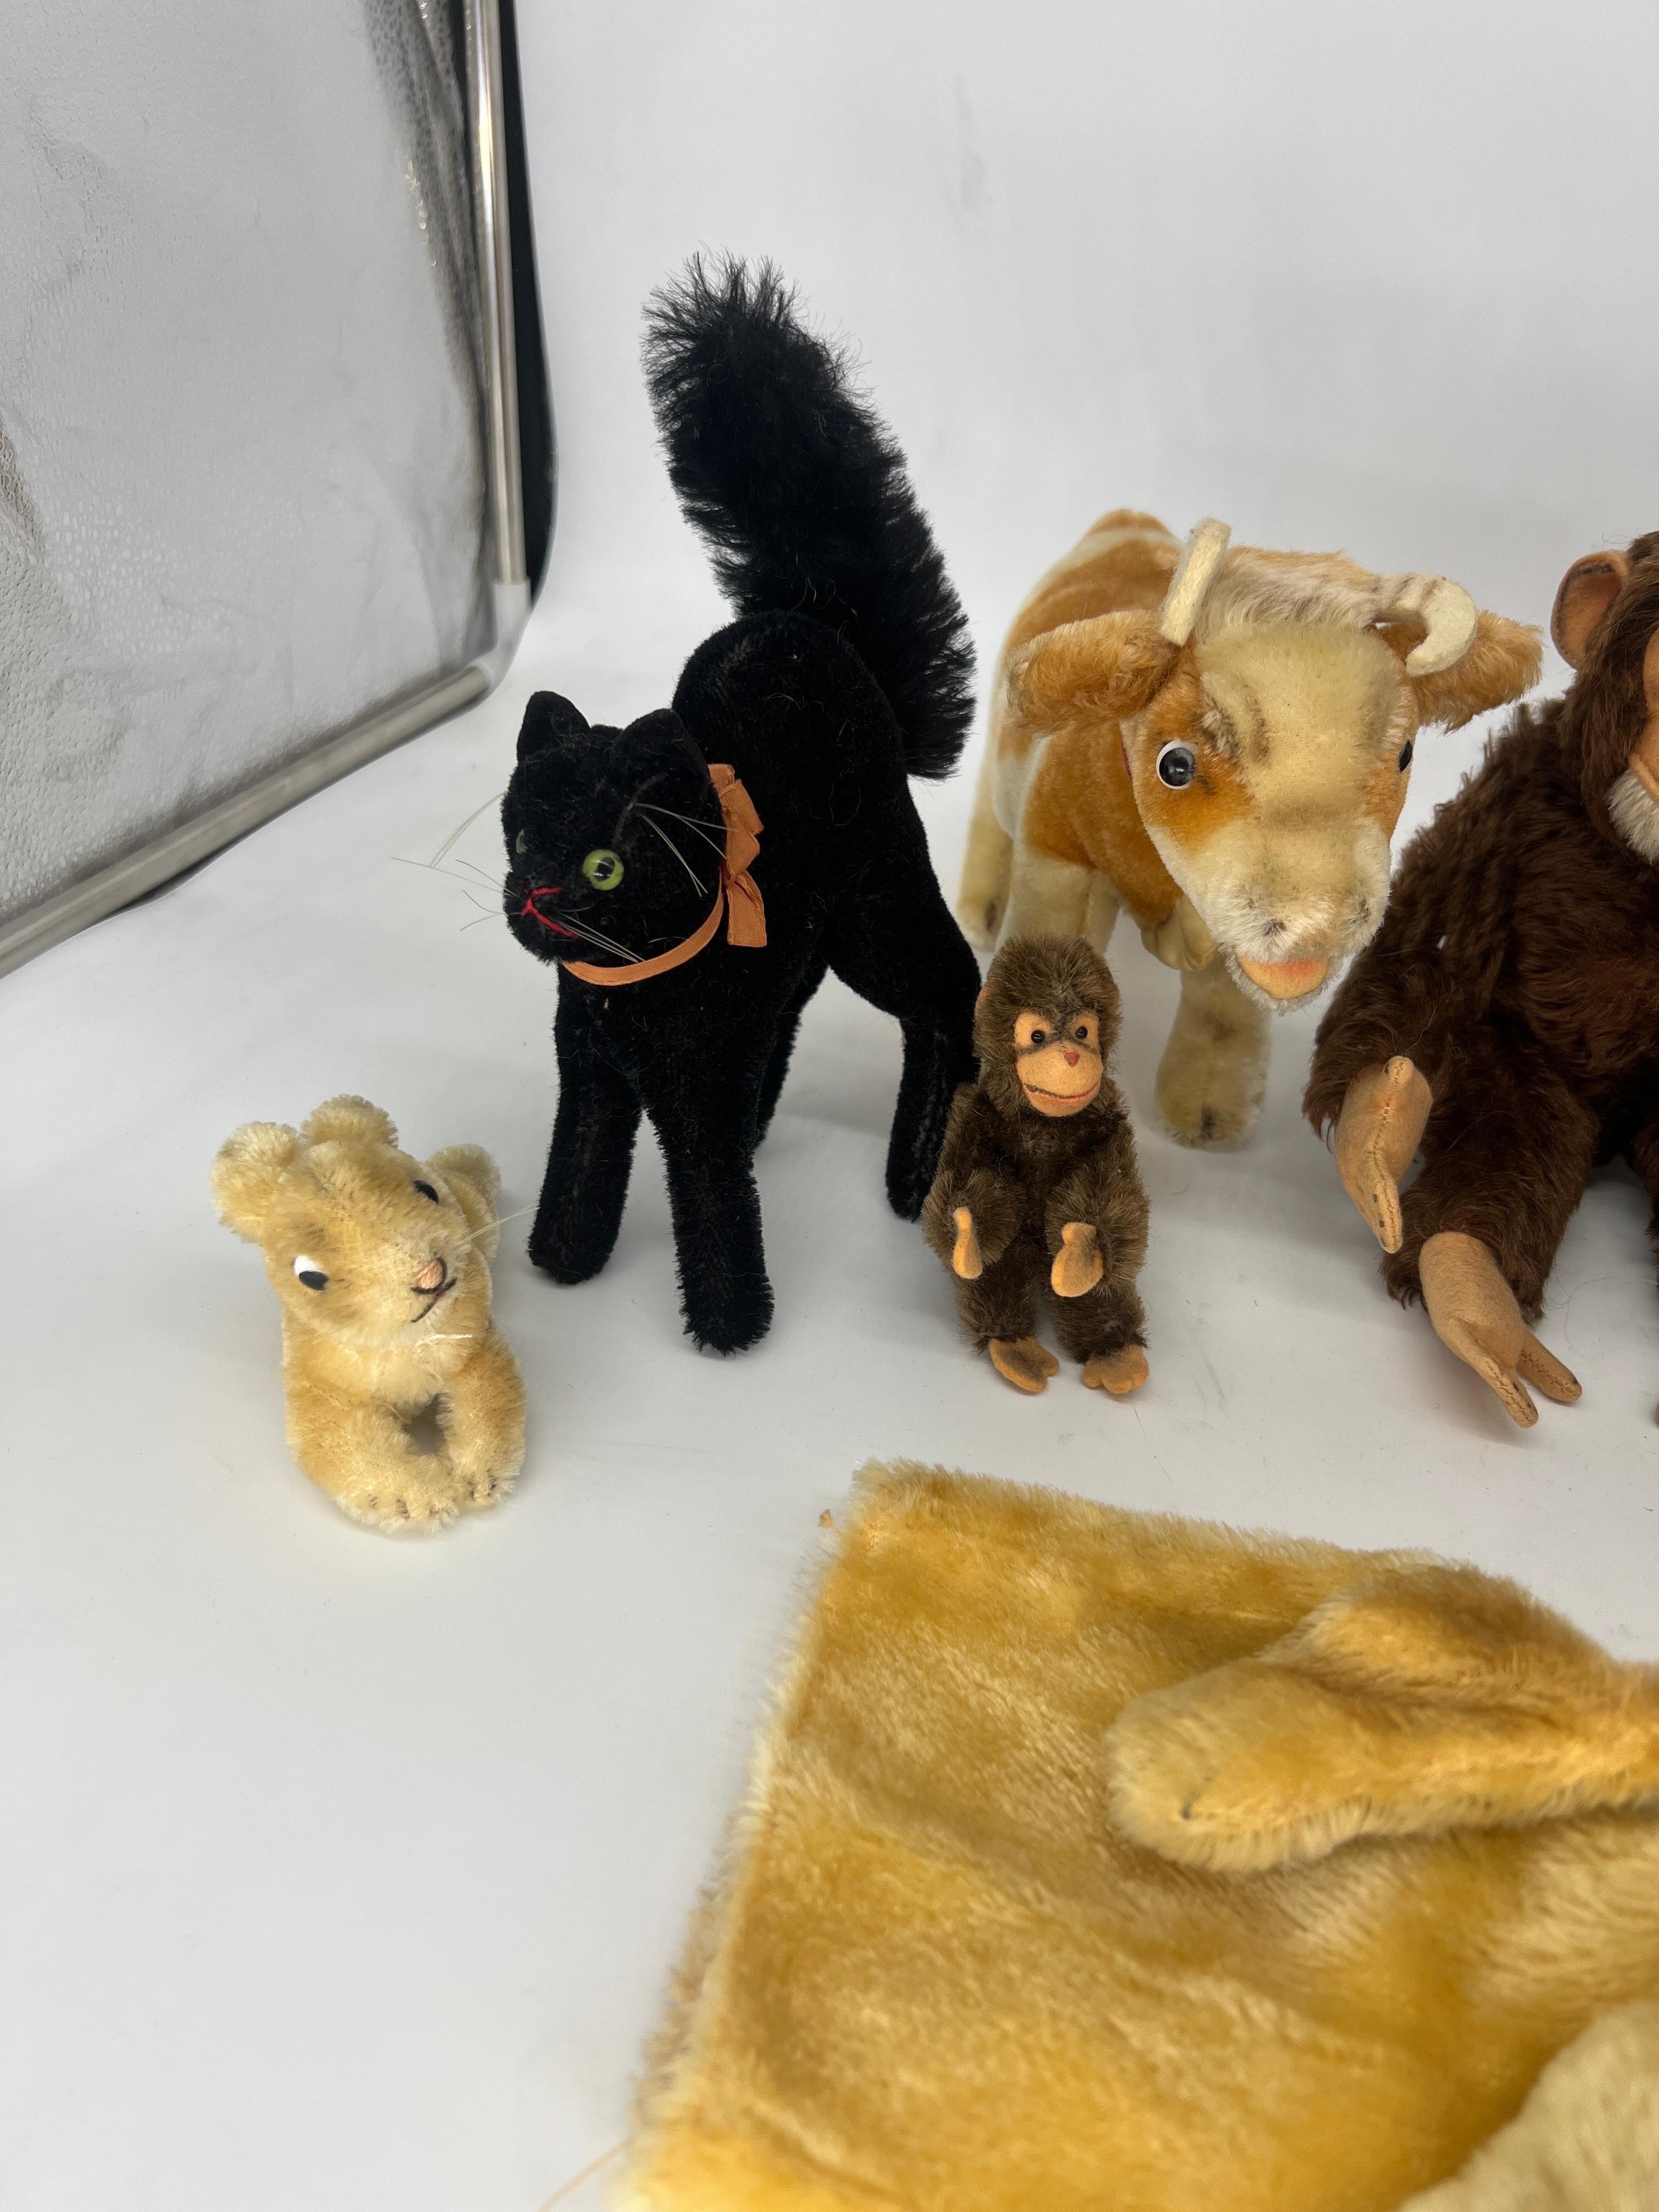 Diese Sammlung von ausgestopften Tieren umfasst 9 Figuren:
1) Miniatur Steiff Kaninchen (ohne Etikett, Brustgeflecht).
2) RARE Steiff Black Tom Cat (No Tag).
3) Miniatur Steiff Affe (ohne Etikett, Brustgeflecht).
4) Steiff Kuh 